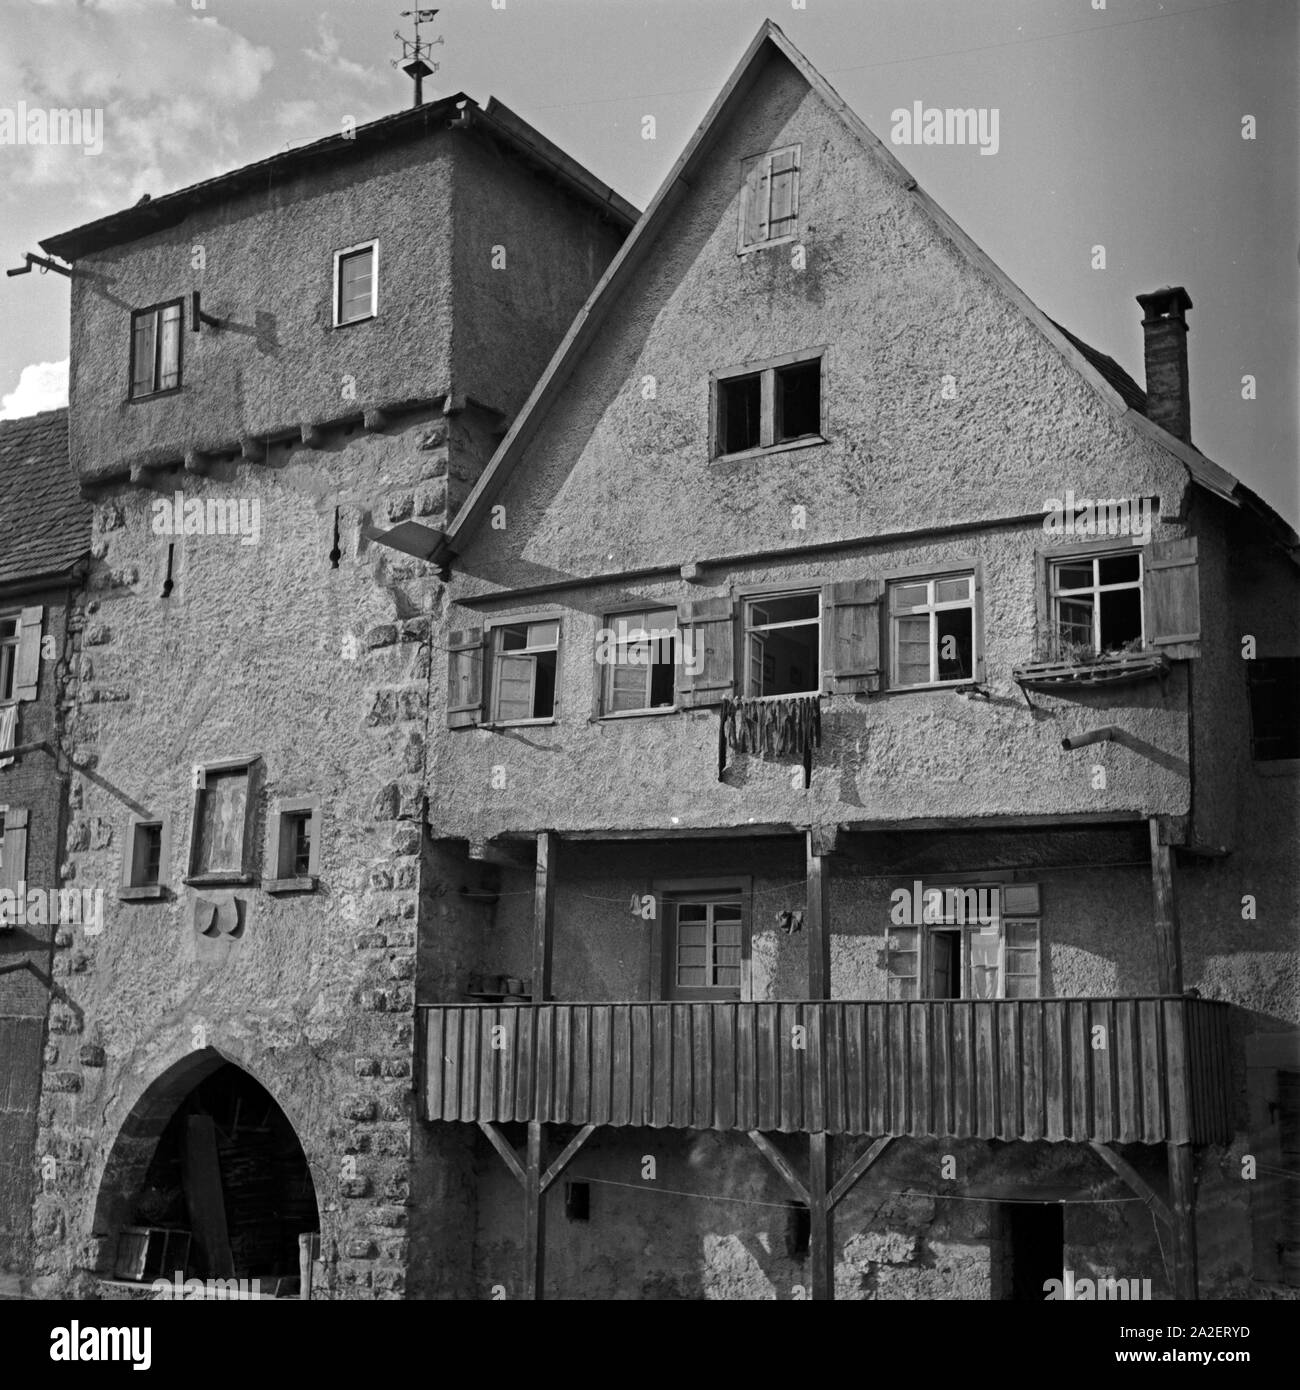 Häuserzeile in der Altstadt von Horb am Neckar, Deutschland 1930er Jahre. Vecchie case di città in città di Horb al fiume Neckar, Germania 1930s. Foto Stock